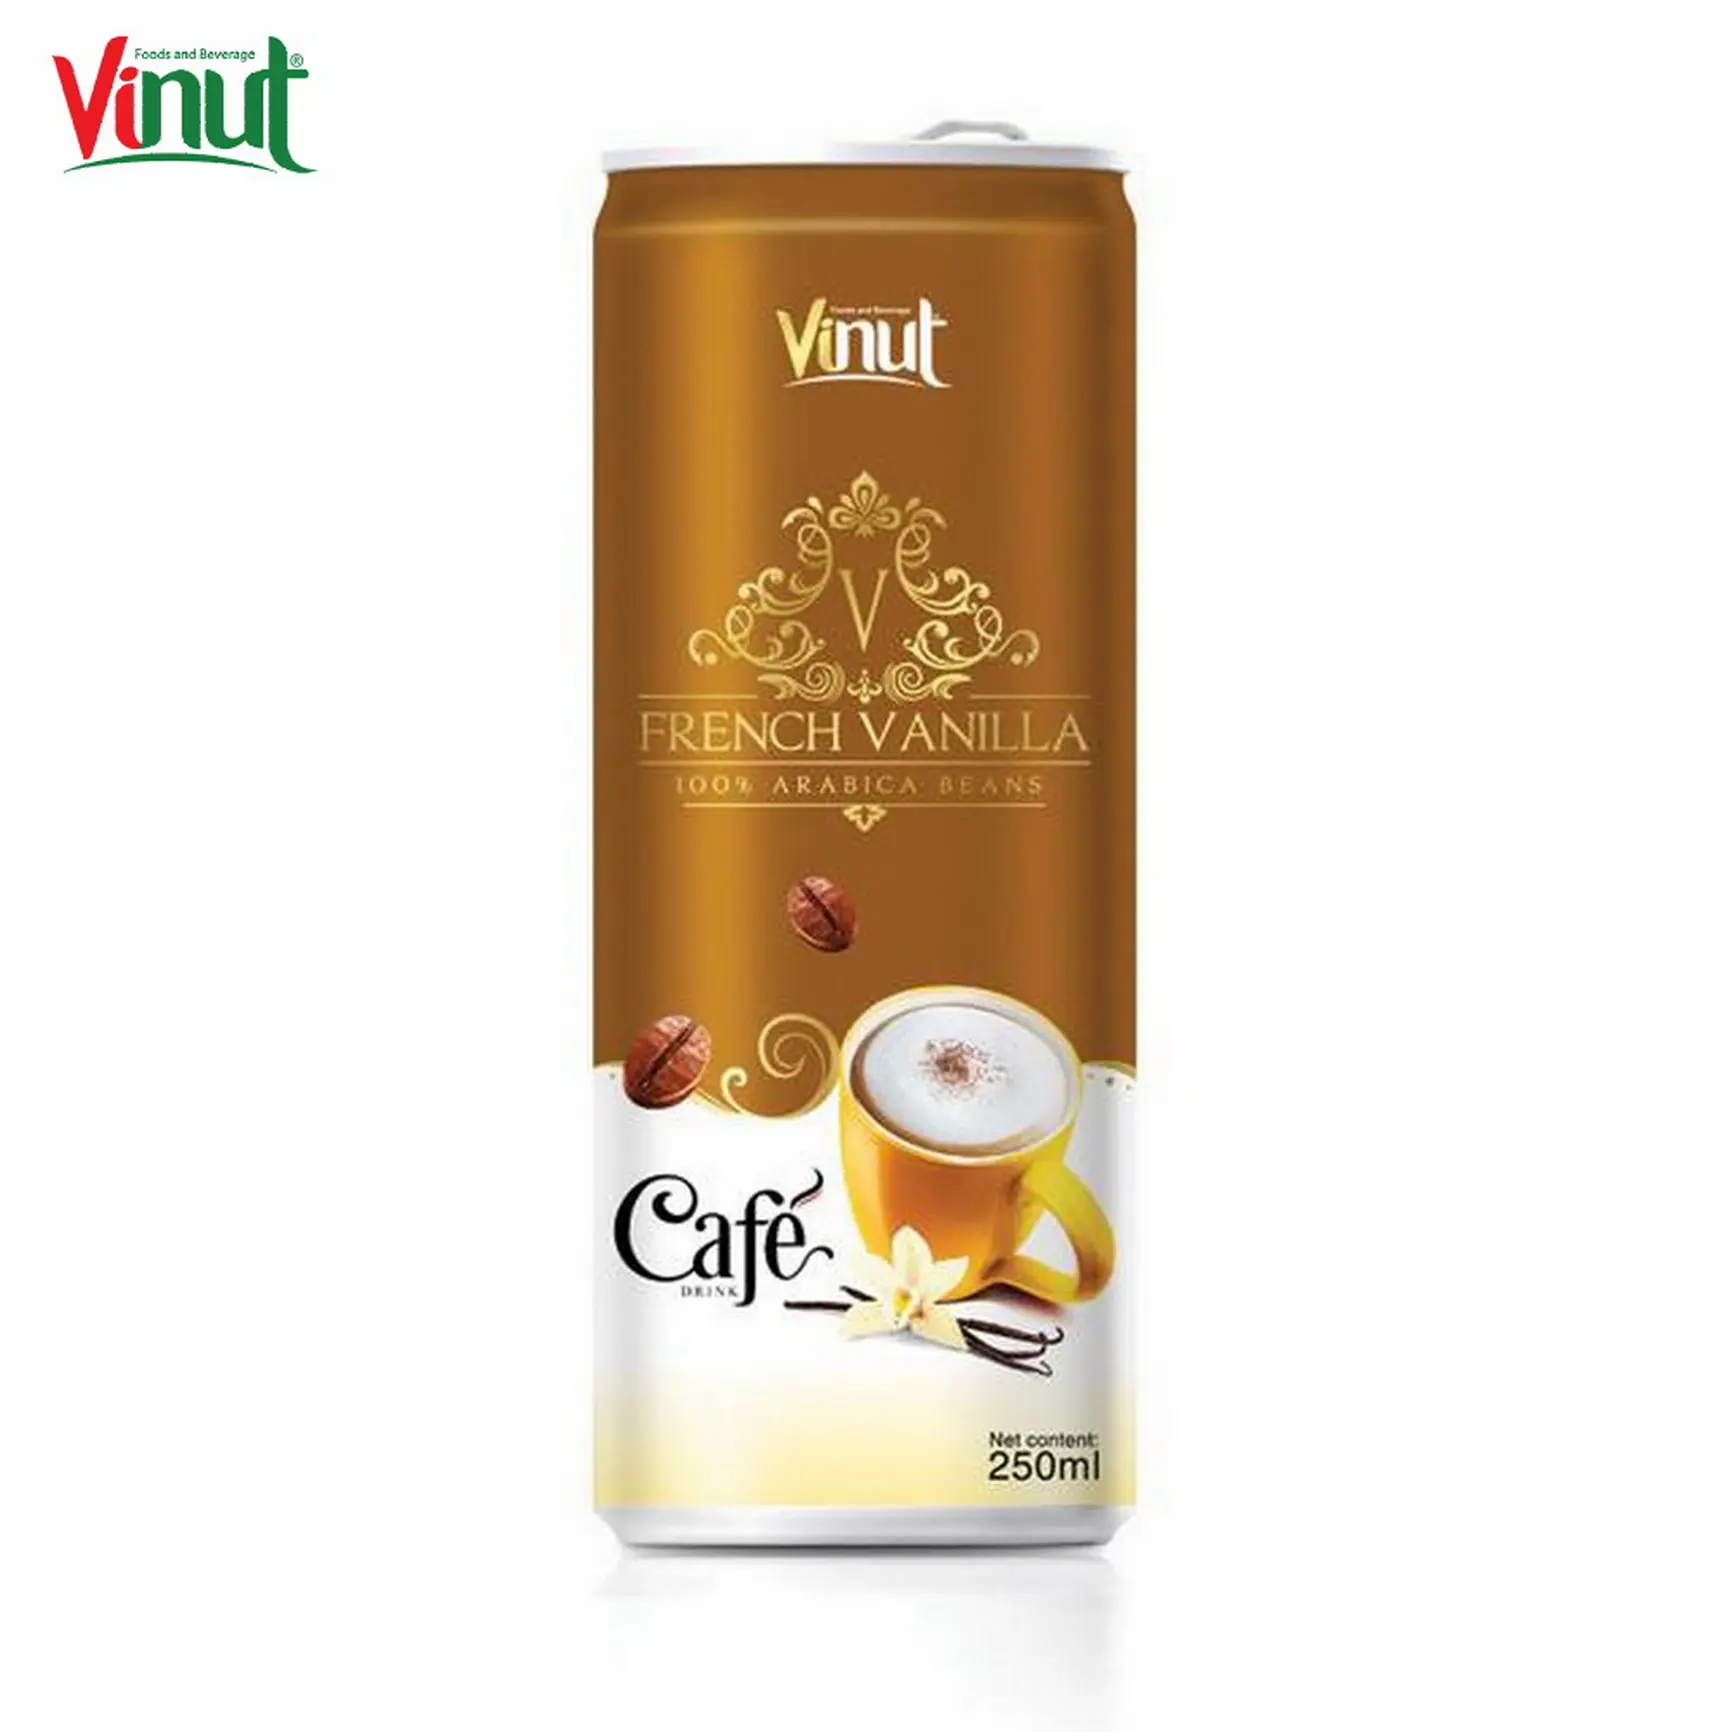 VINUT Can (estañado) para bebidas de marca privada, 250ml, proveedores de café francés de vainilla, los mejores fabricantes